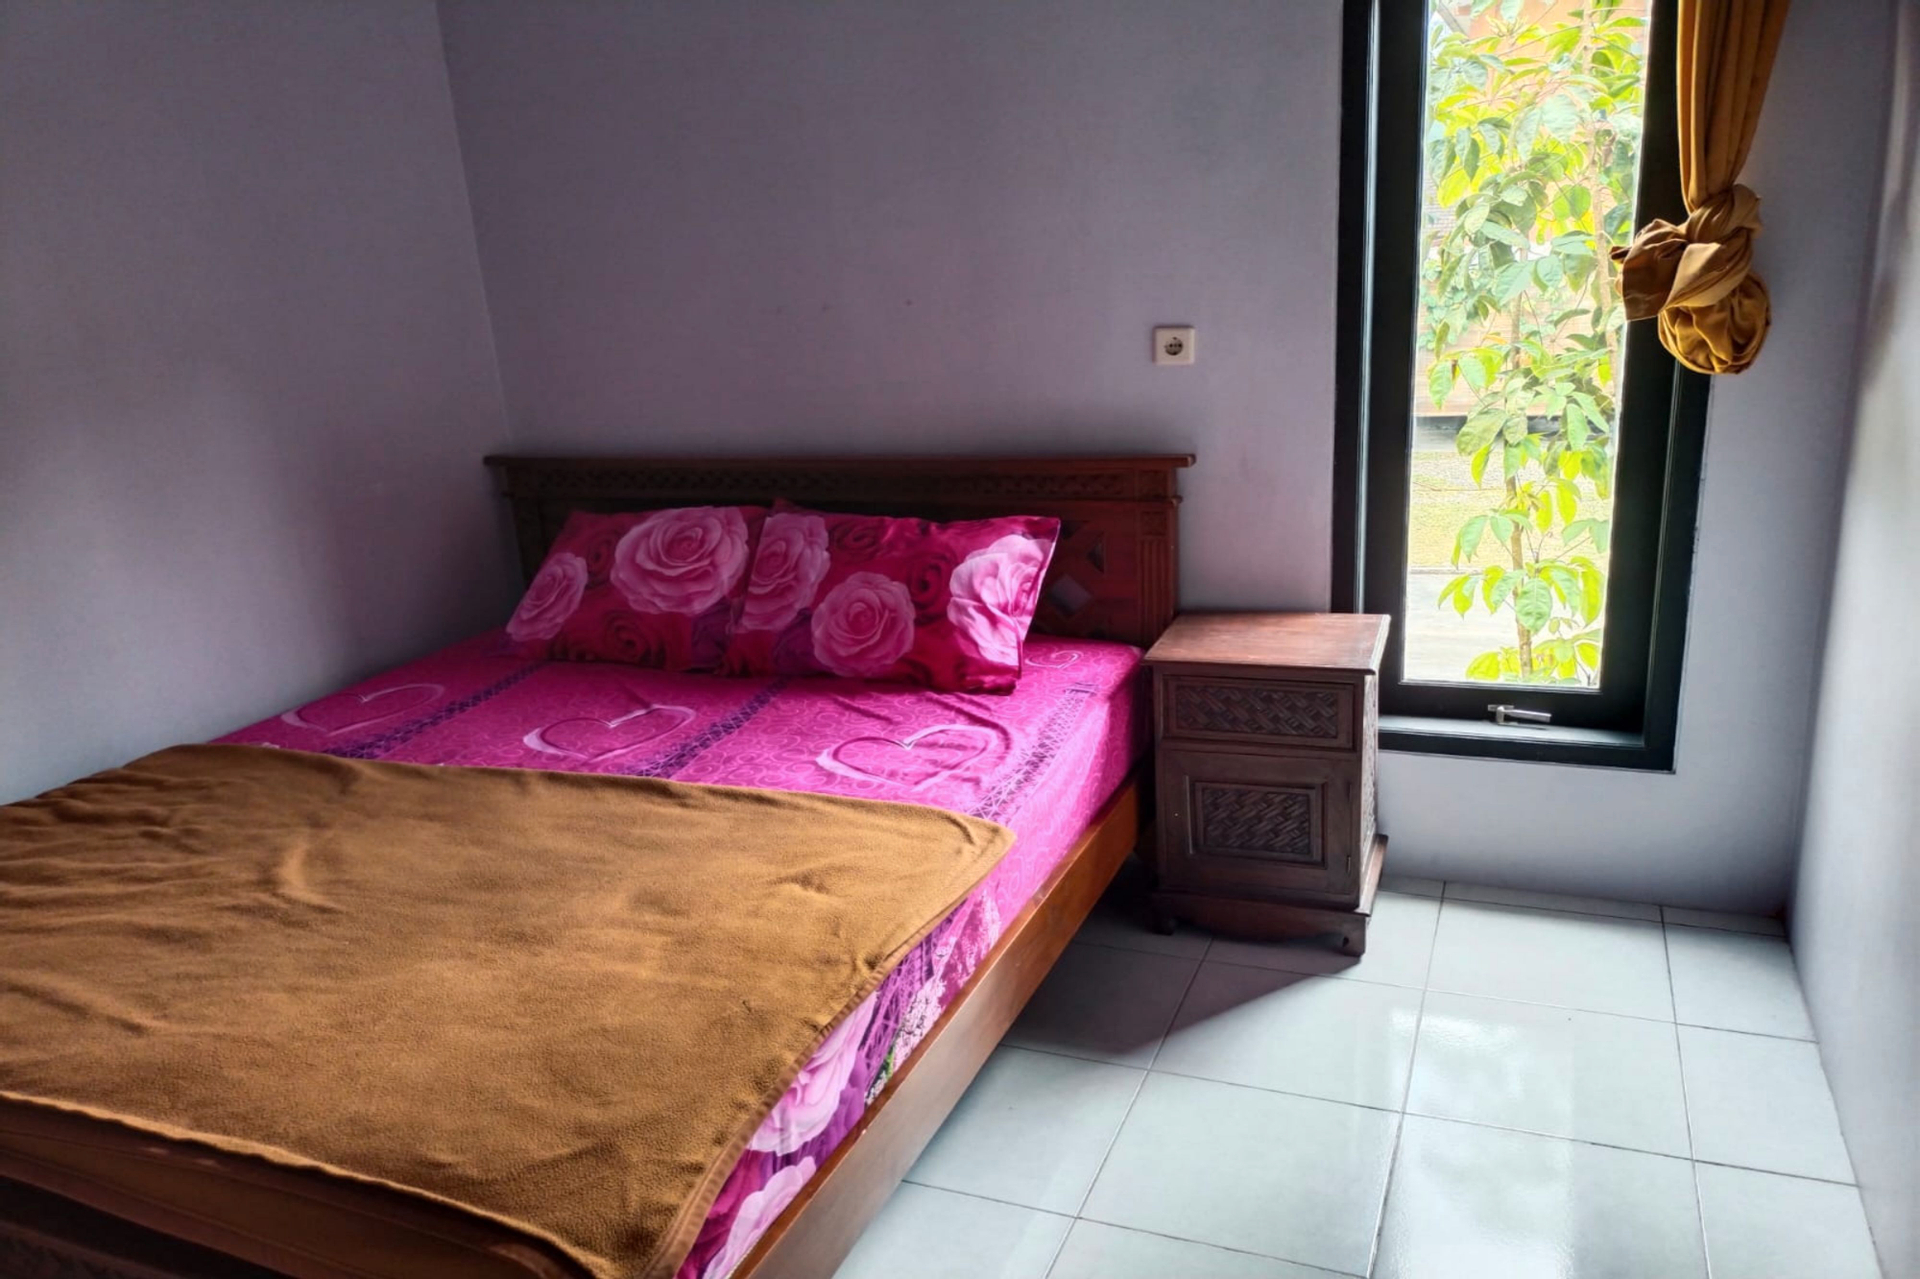 Bedroom 2, Villa Assalam Tawangmangu, Karanganyar